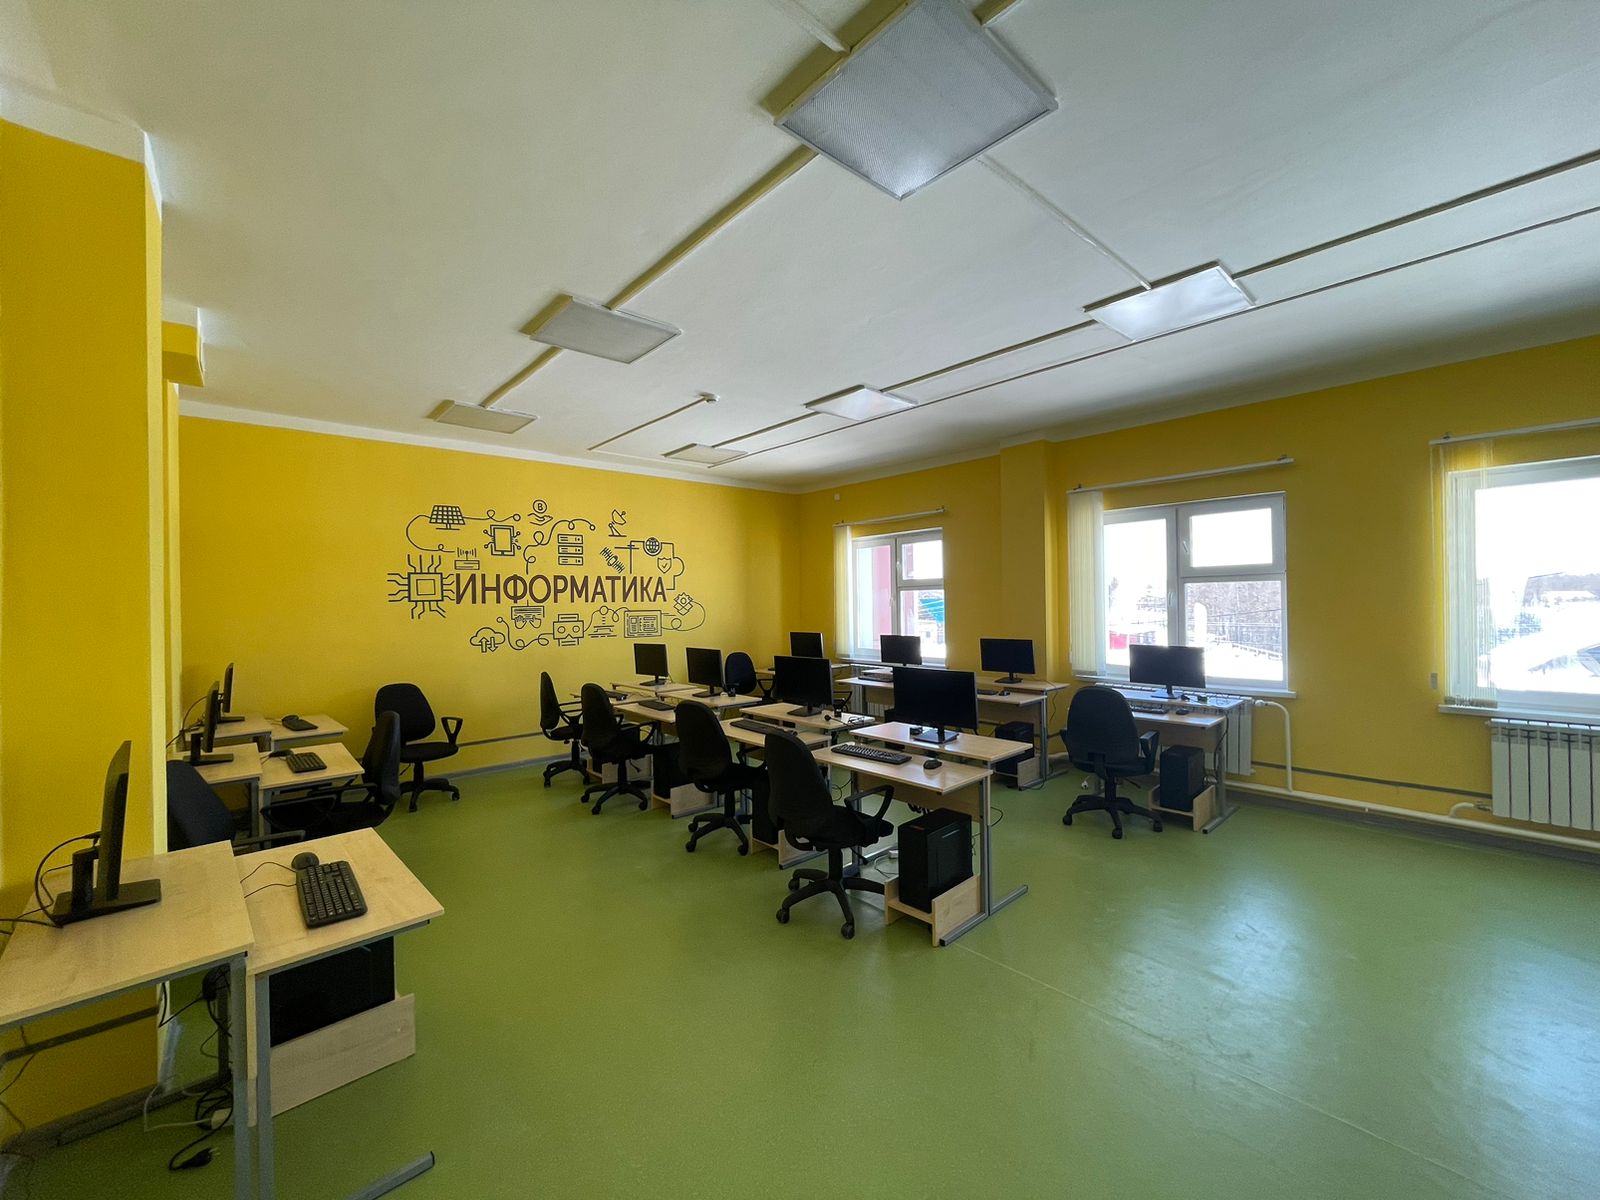 Кабинет информатики новой школы в селе Сырдах Якутии